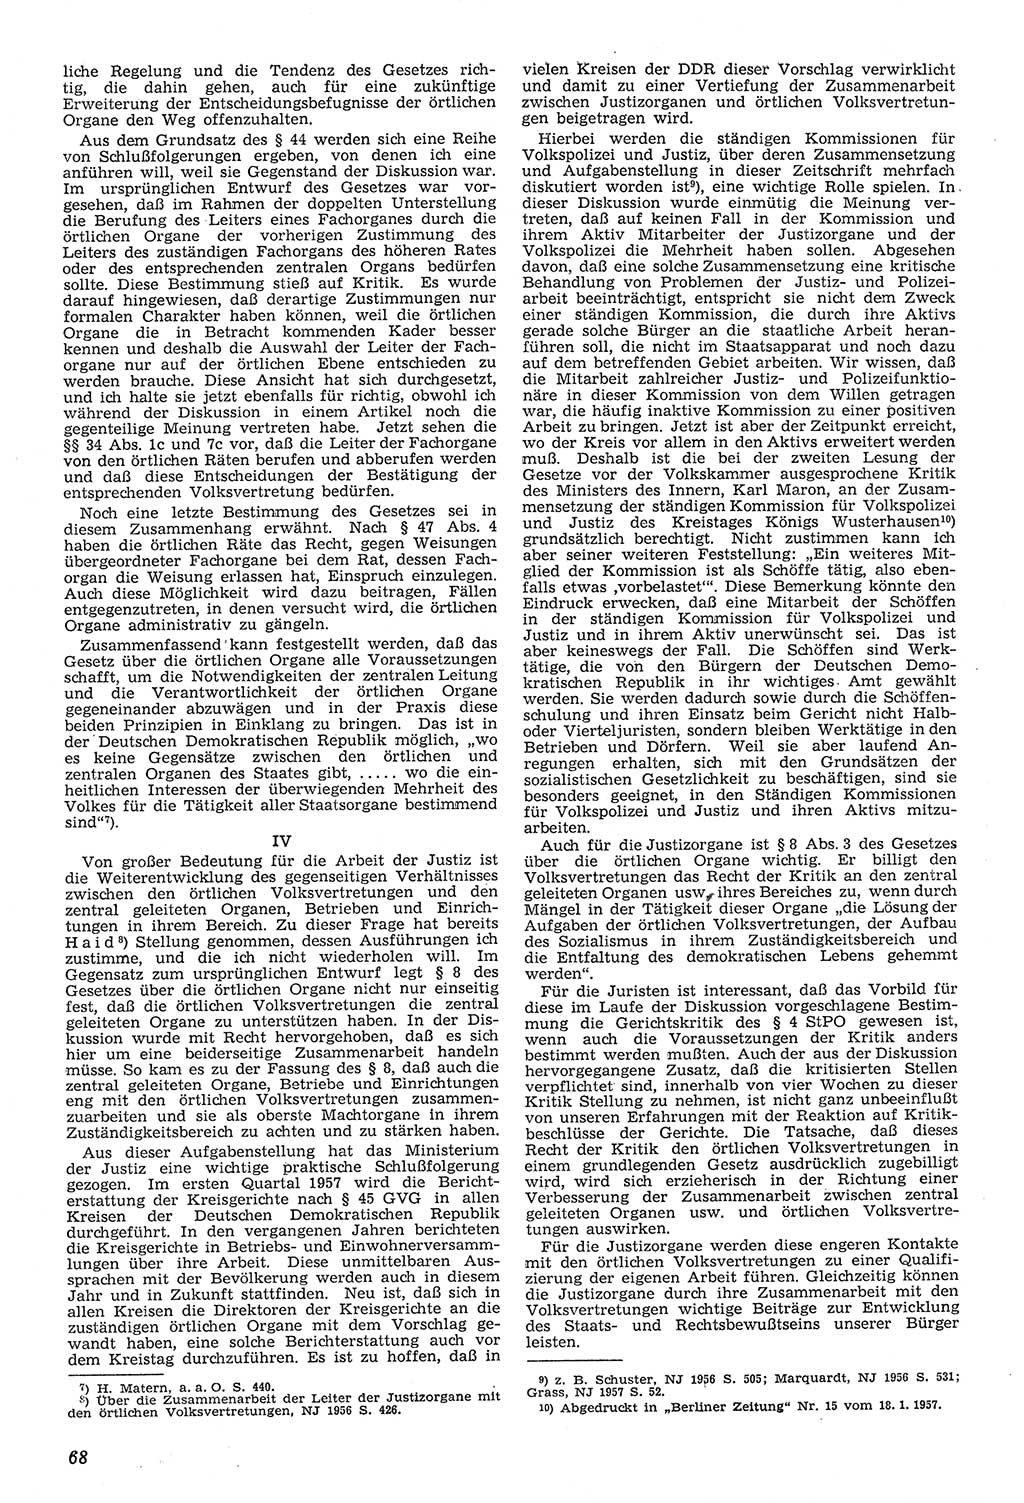 Neue Justiz (NJ), Zeitschrift für Recht und Rechtswissenschaft [Deutsche Demokratische Republik (DDR)], 11. Jahrgang 1957, Seite 68 (NJ DDR 1957, S. 68)